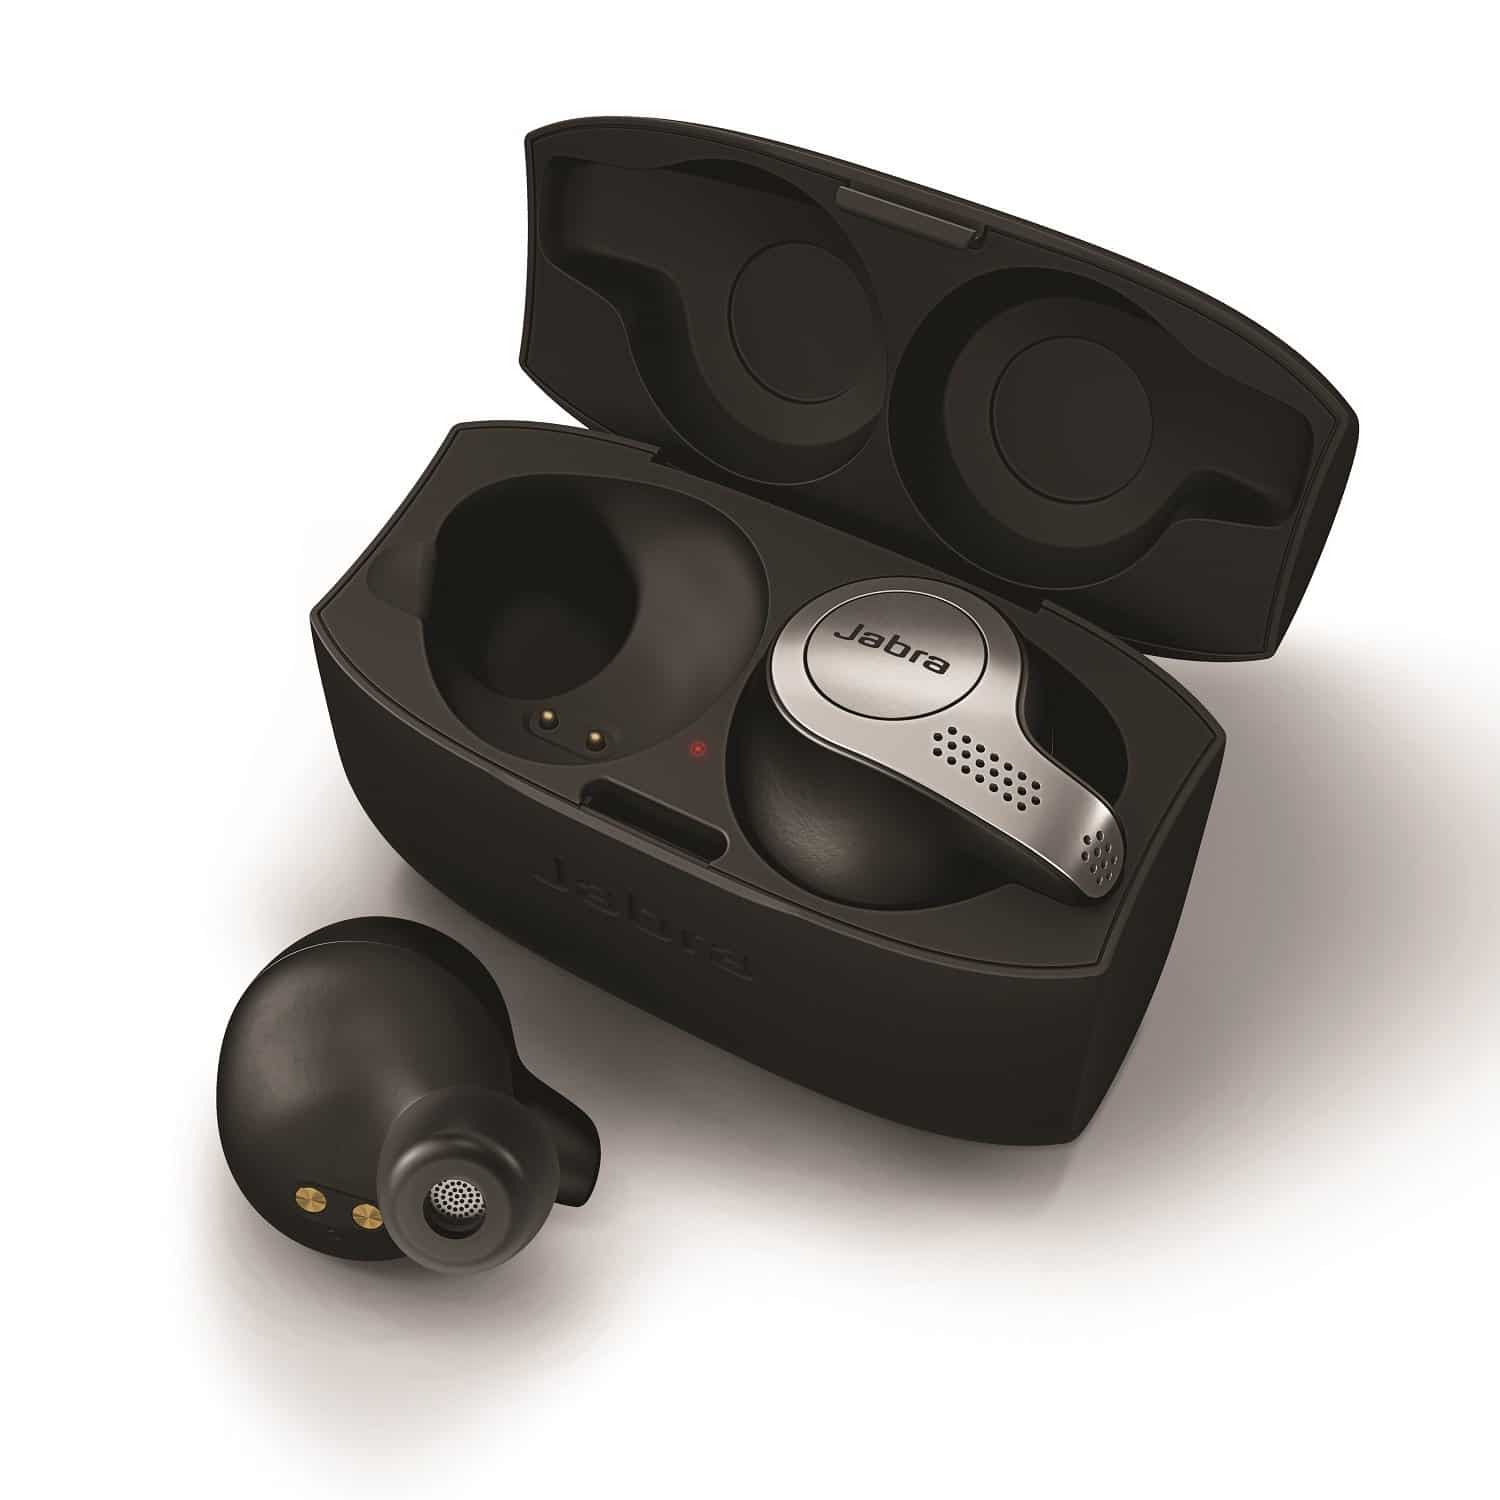 Jabra Elite 65t Alexa Enabled True Wireless Earbuds